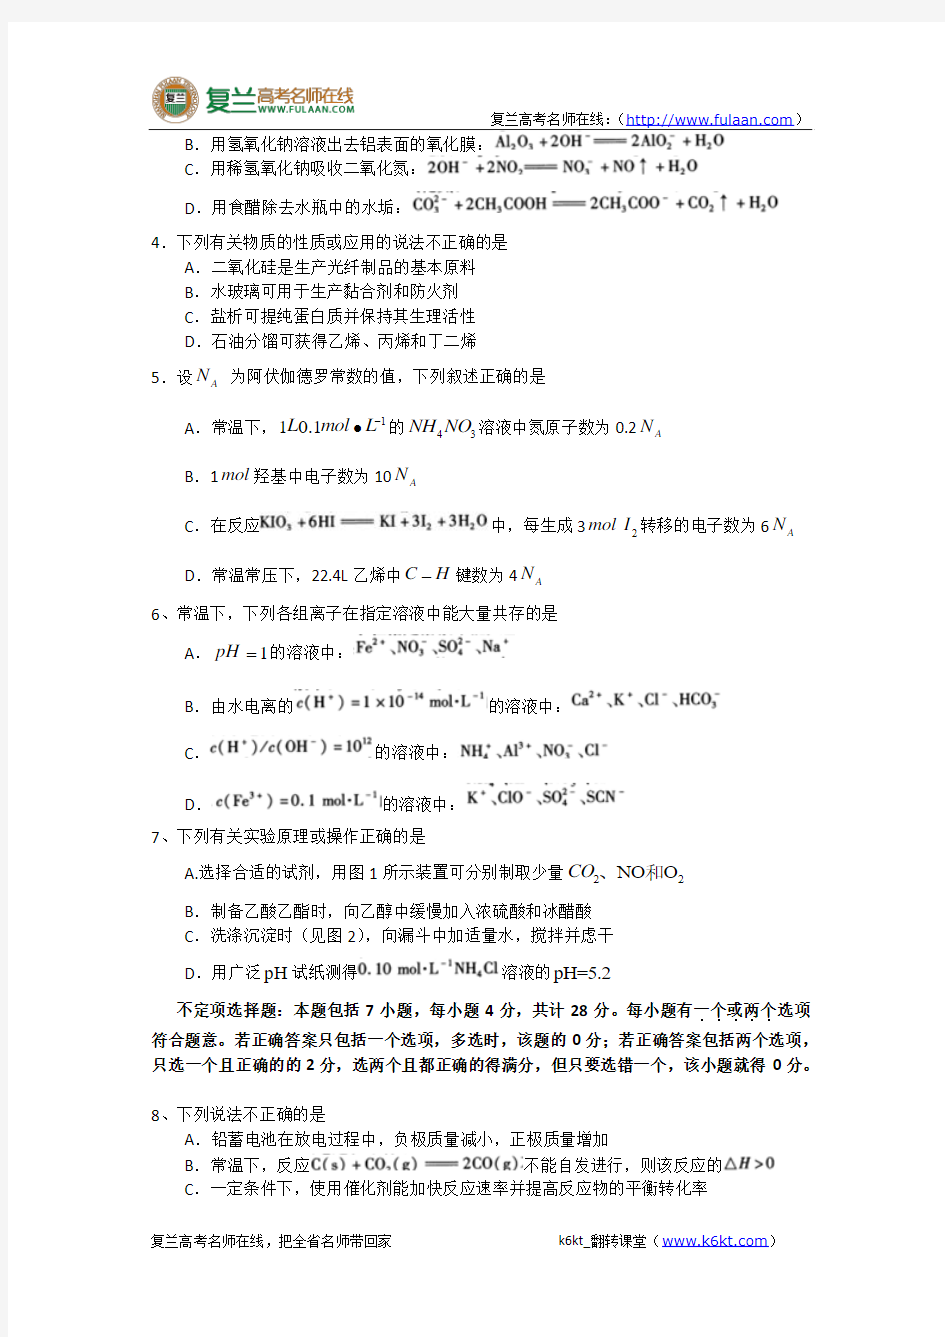 2010年高考试题——化学(江苏卷)精校版(含答案)-复兰高考名师在线精编解析版